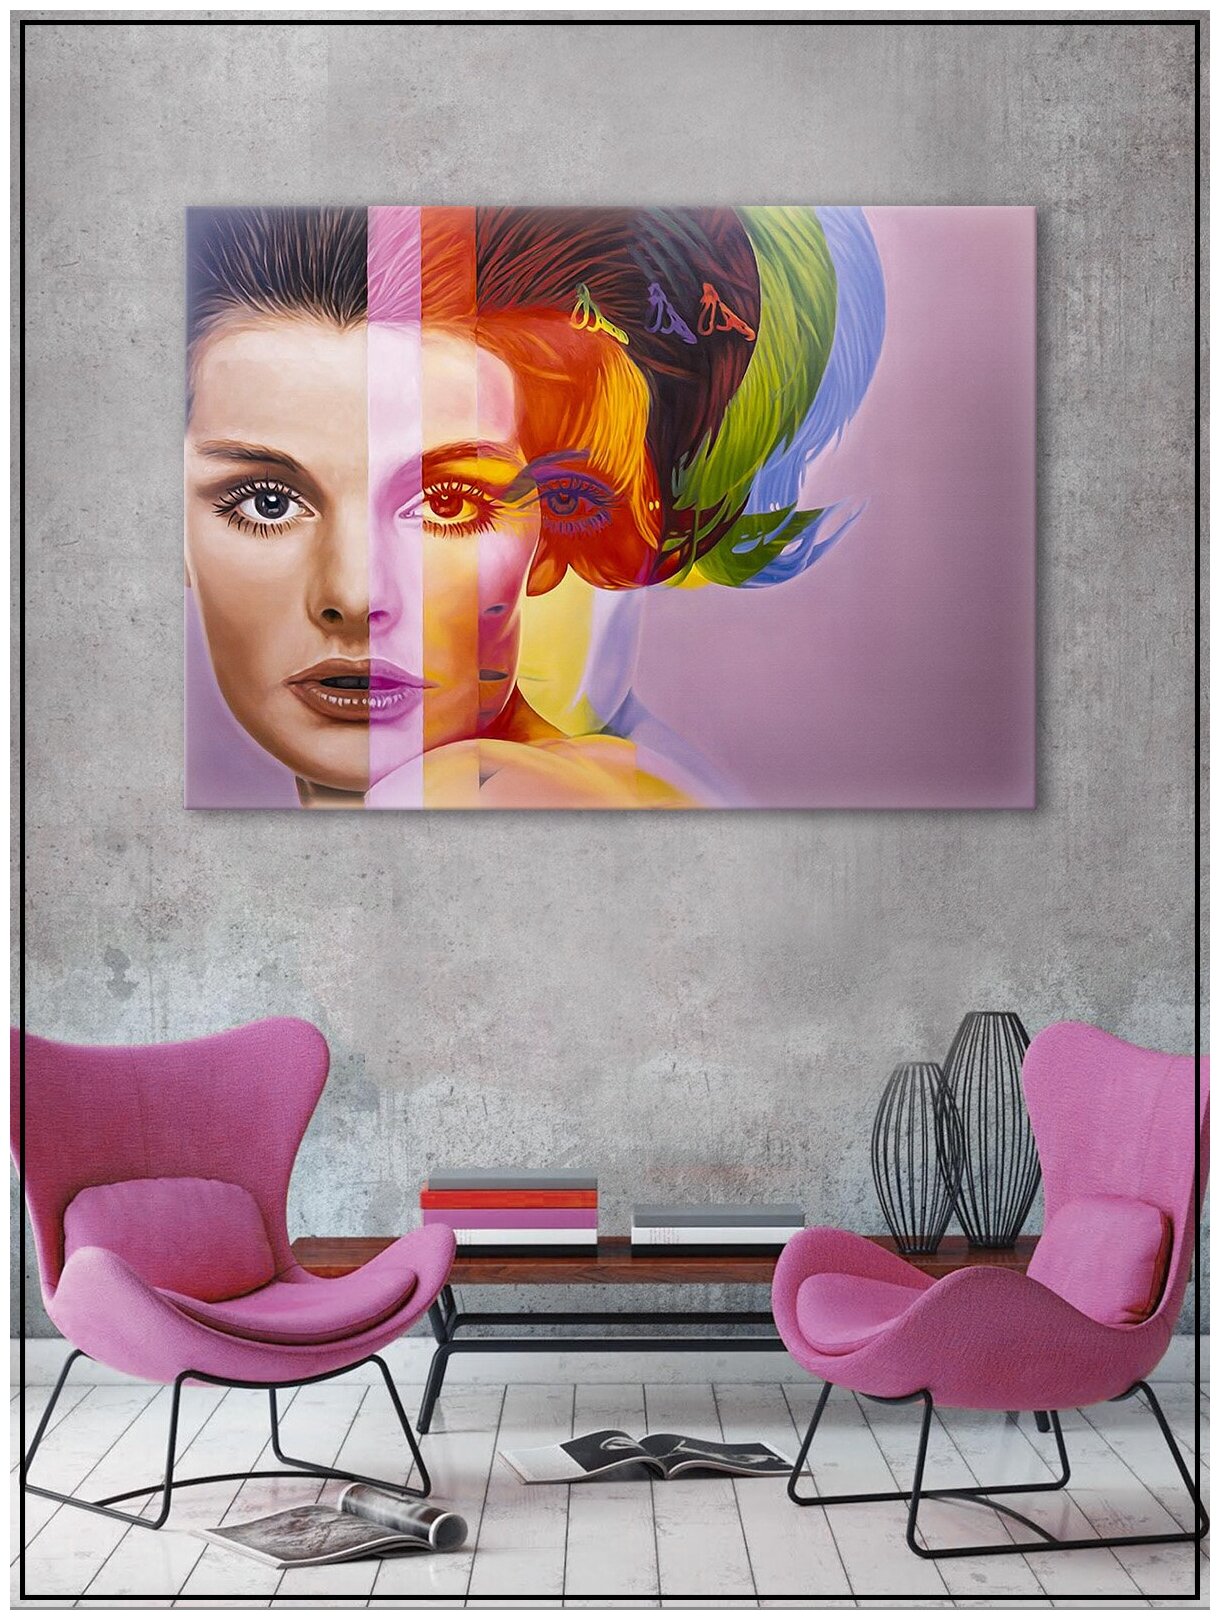 Картина для интерьера на натуральном хлопковом холсте "Девушка радуга", 30*40см, холст на подрамнике, картина в подарок для дома